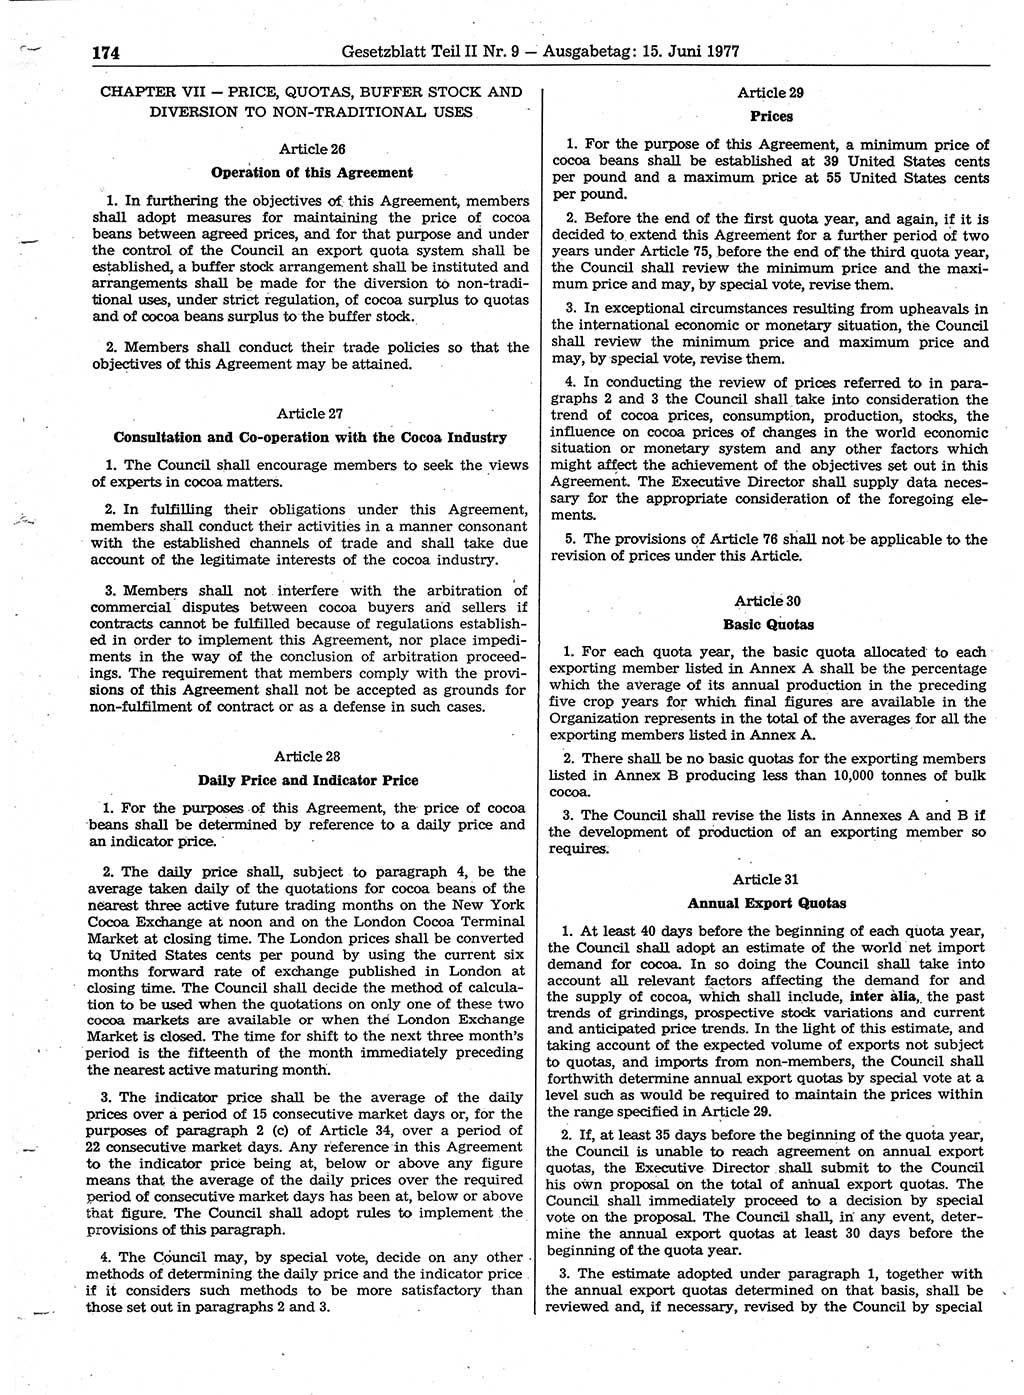 Gesetzblatt (GBl.) der Deutschen Demokratischen Republik (DDR) Teil ⅠⅠ 1977, Seite 174 (GBl. DDR ⅠⅠ 1977, S. 174)